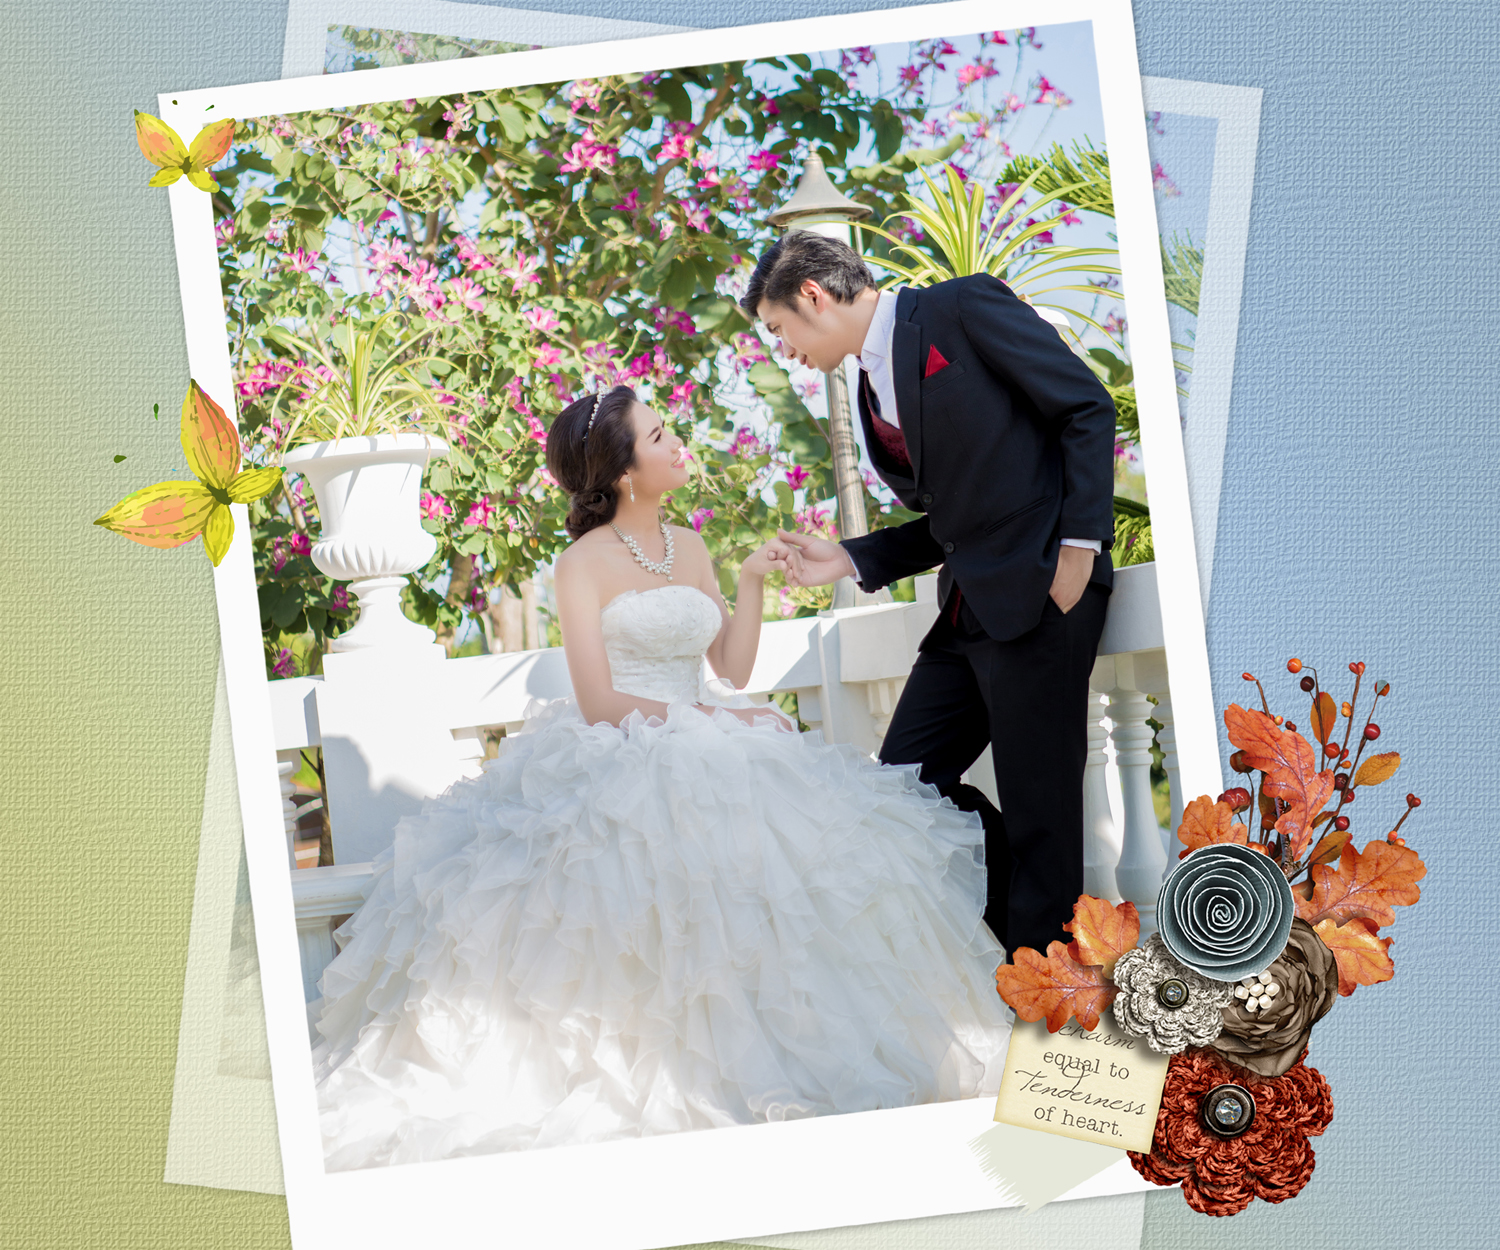 สตูดิโอแต่งงาน โคราช , แพ็คเกจถ่ายพรีเวดดิ้ง นอกสถานที่ , แพ็คเกจถ่ายรูปแต่งงาน 3,900